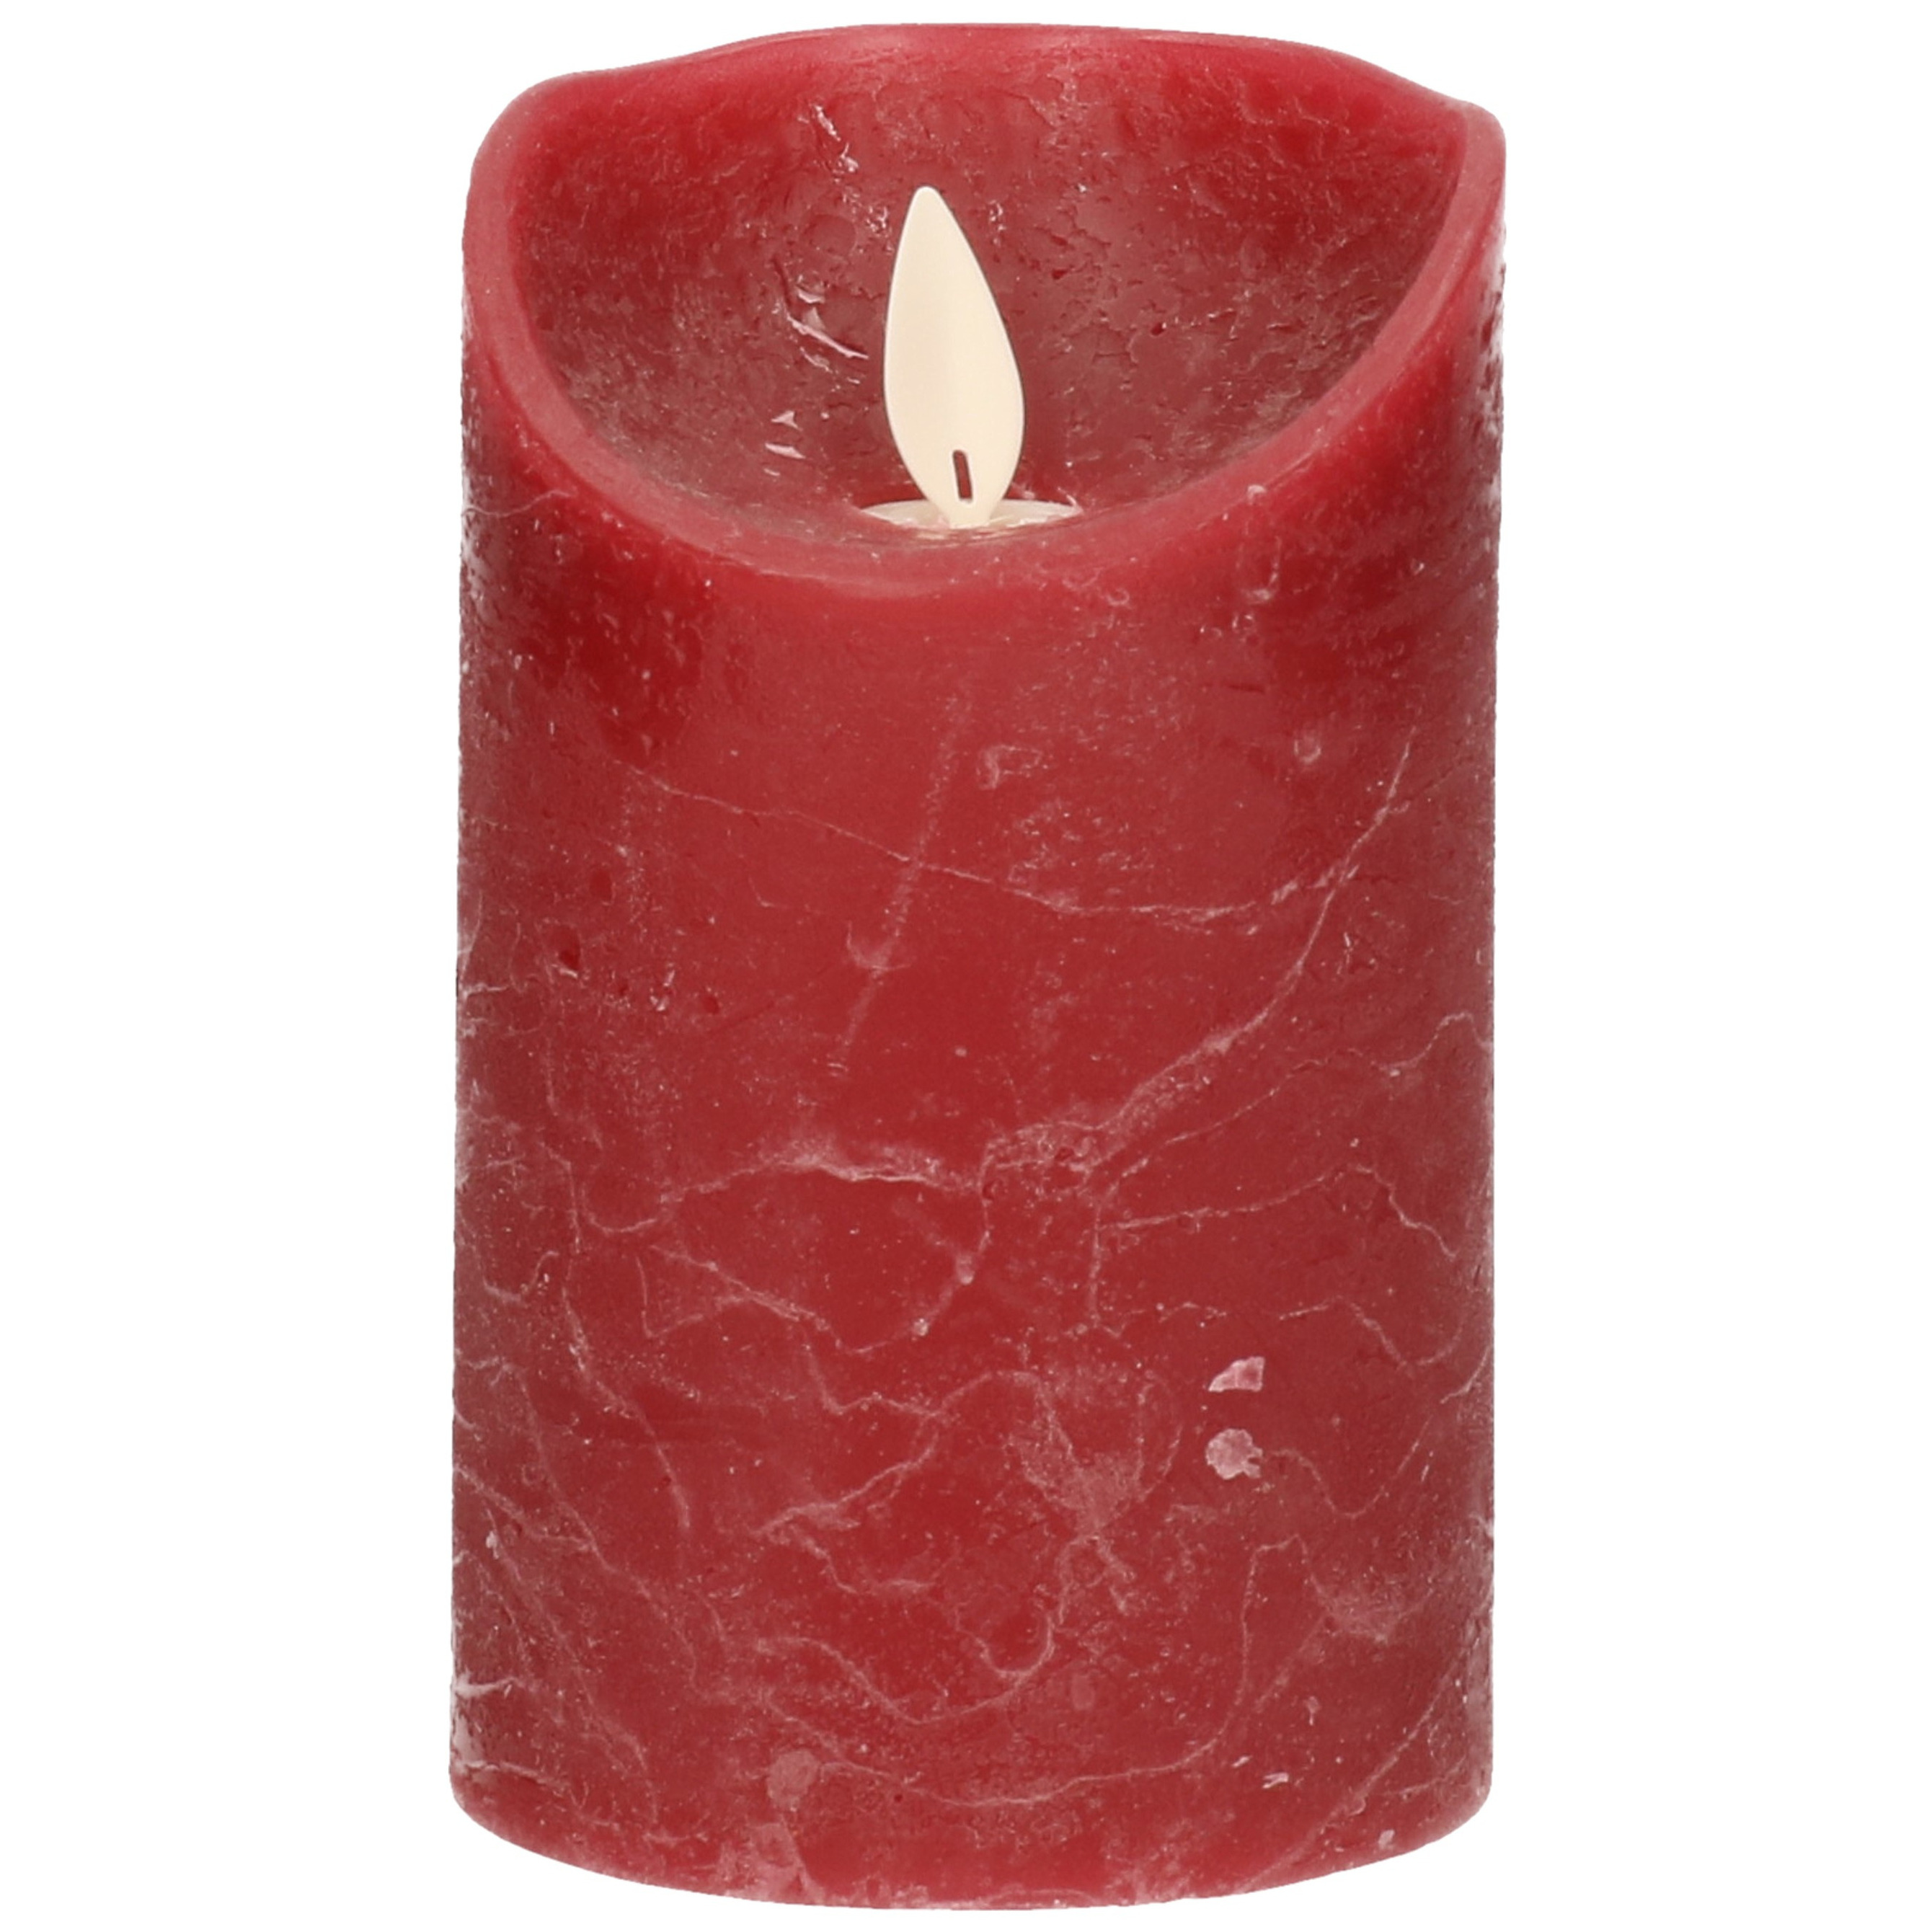 1x Bordeaux rode LED kaarsen - stompkaarsen met bewegende vlam 12,5